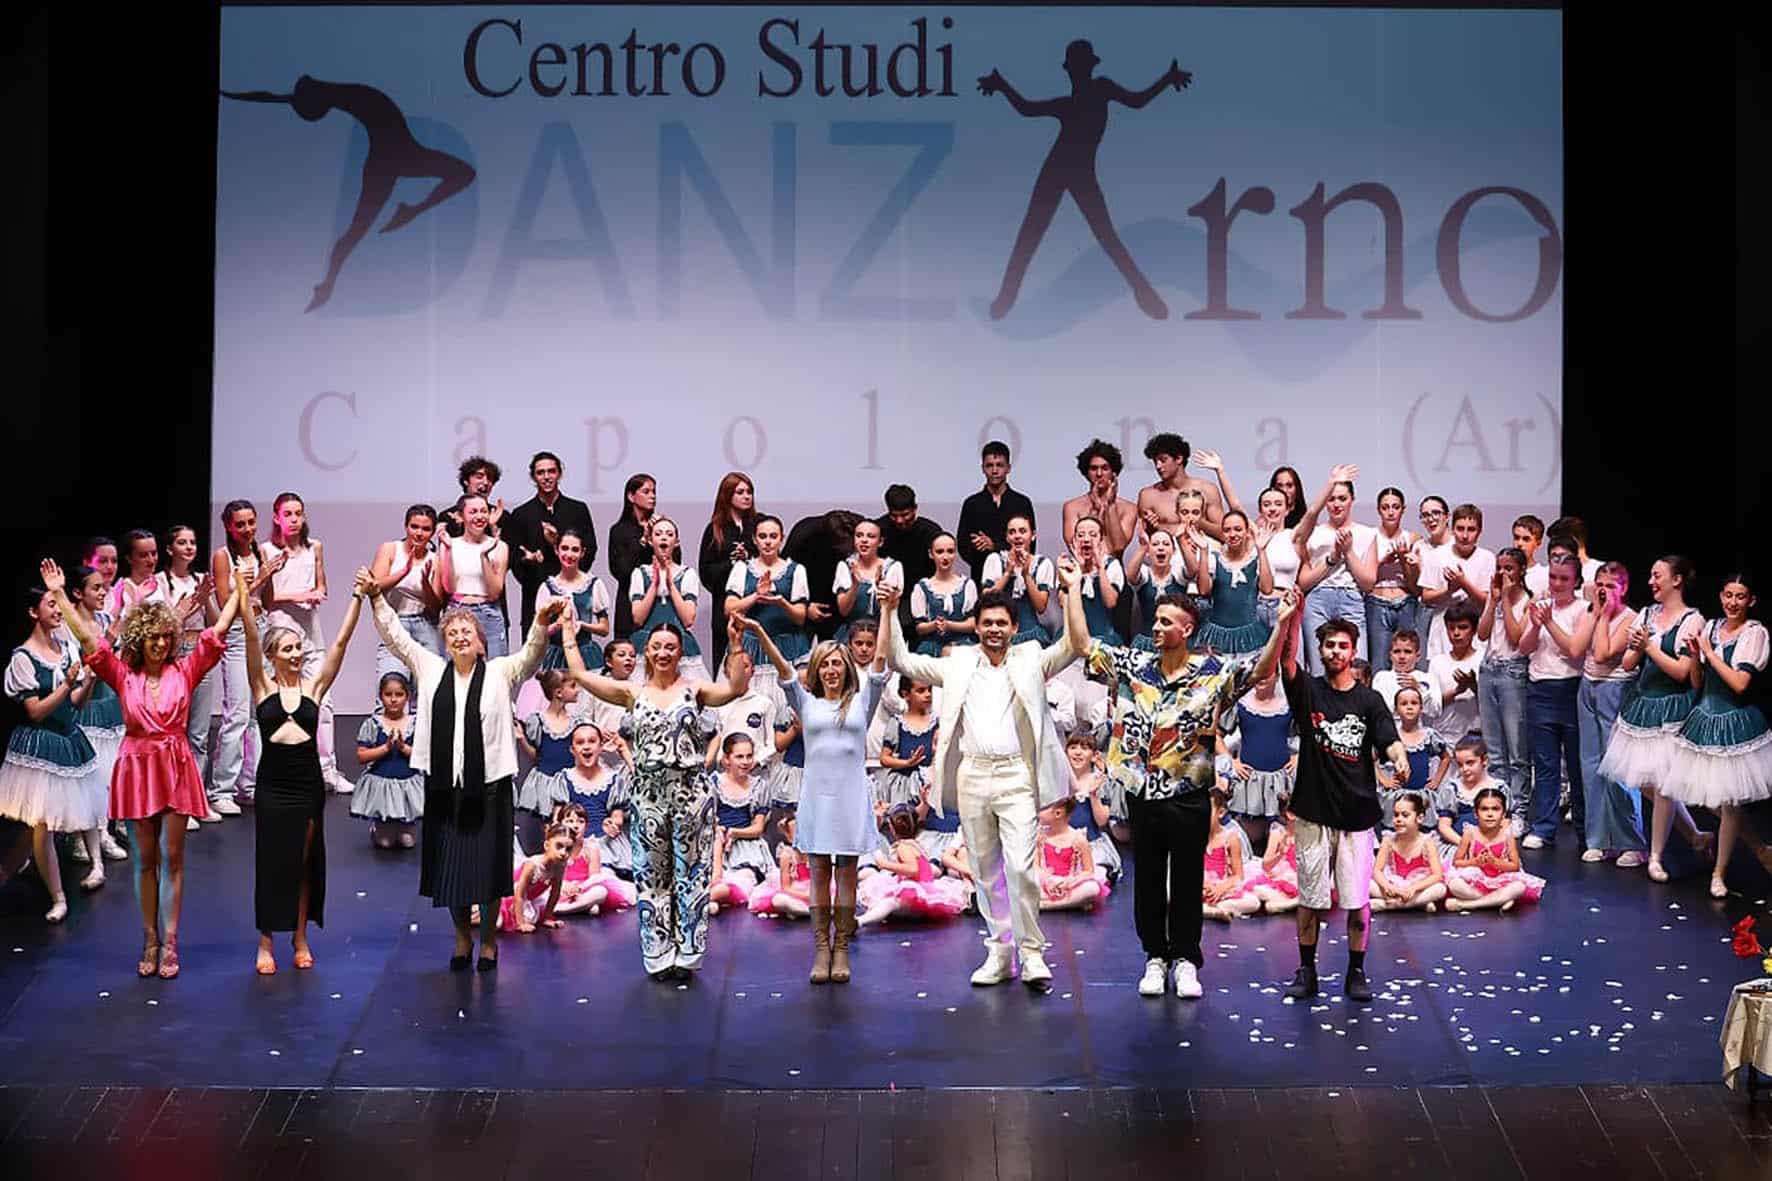 Festival del ballo a Capolona, un'esperienza di apprendimento danzante ad Arezzo.